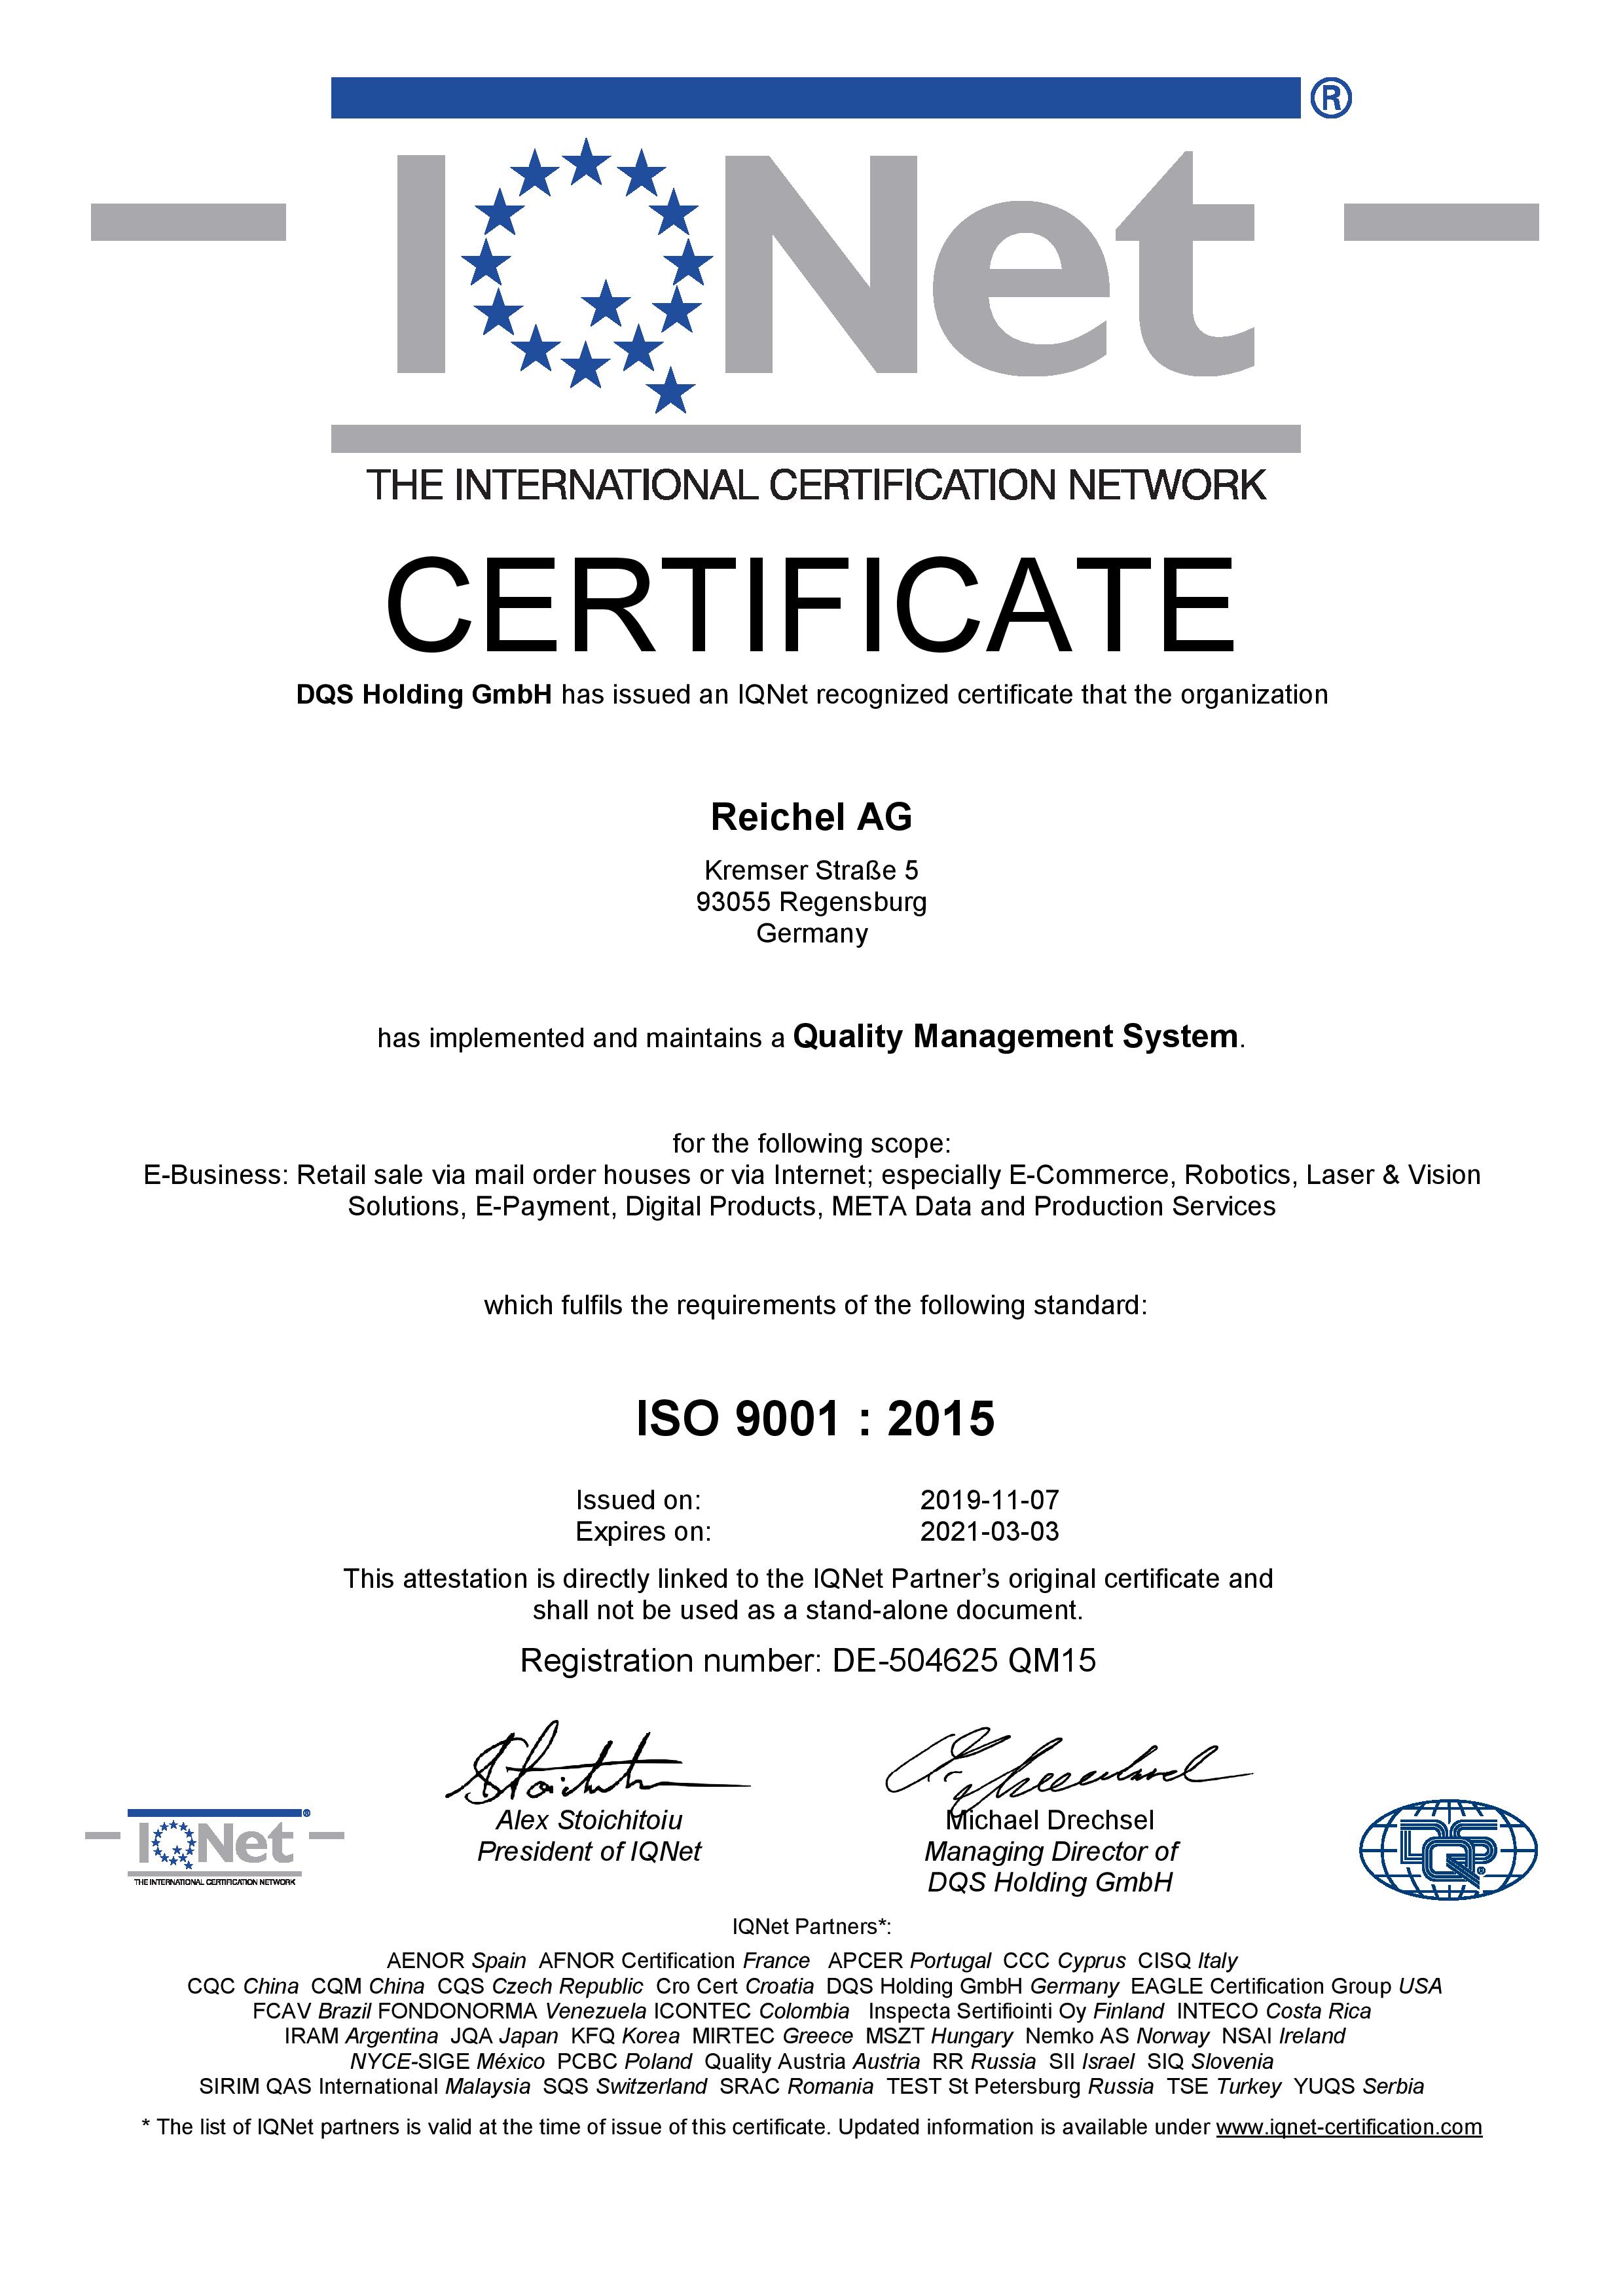 Qualitätsmanagement der Reichel AG ISO 9001:2015 IQNet The International Certification Network Englisch